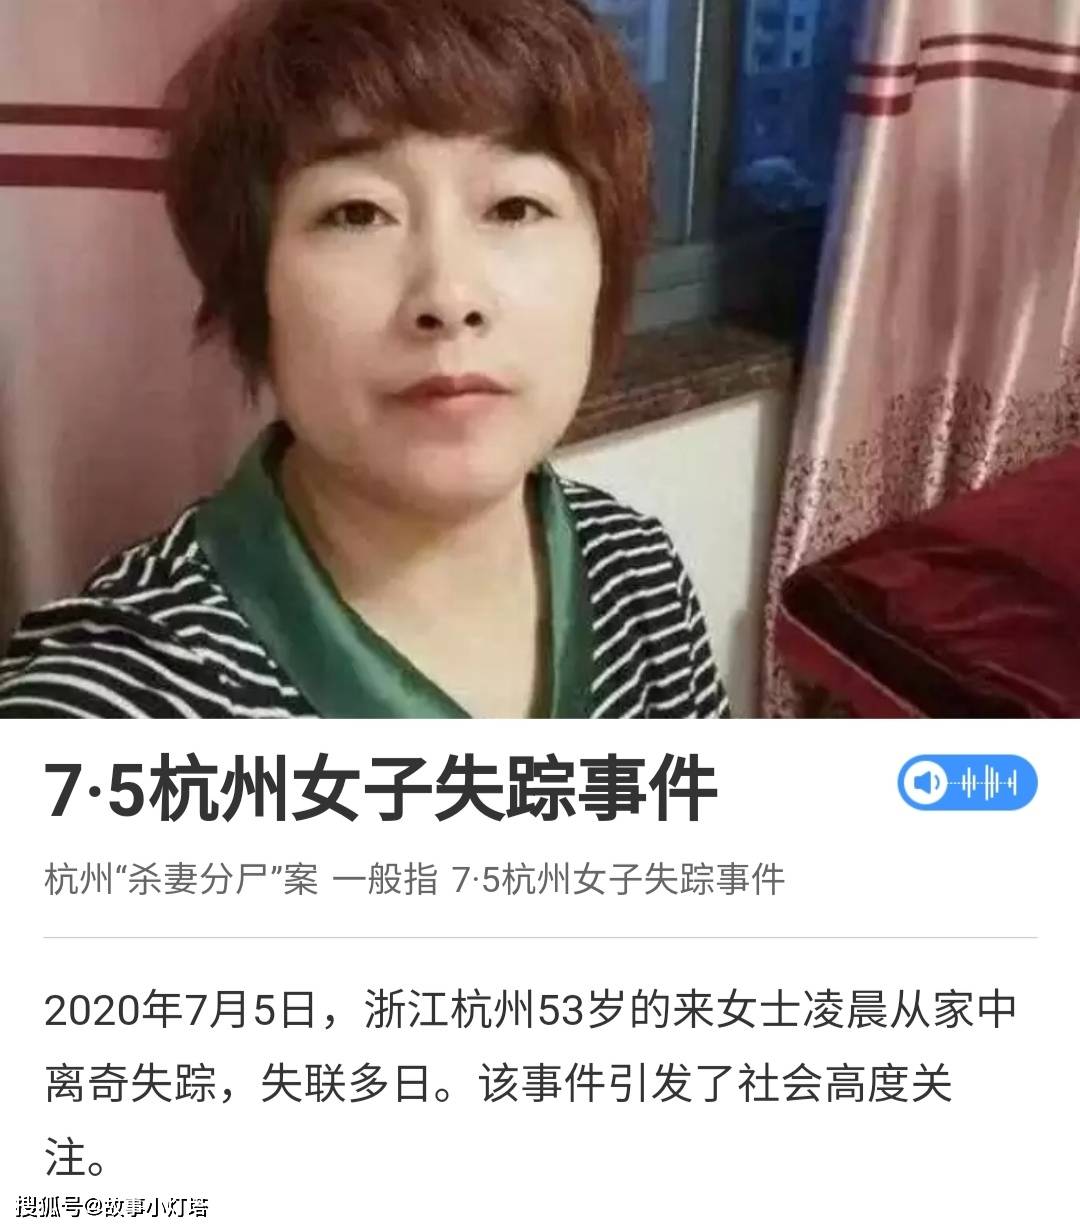 你猜到了杭州杀妻碎尸案的凶手,但杭州纵火案就没那么